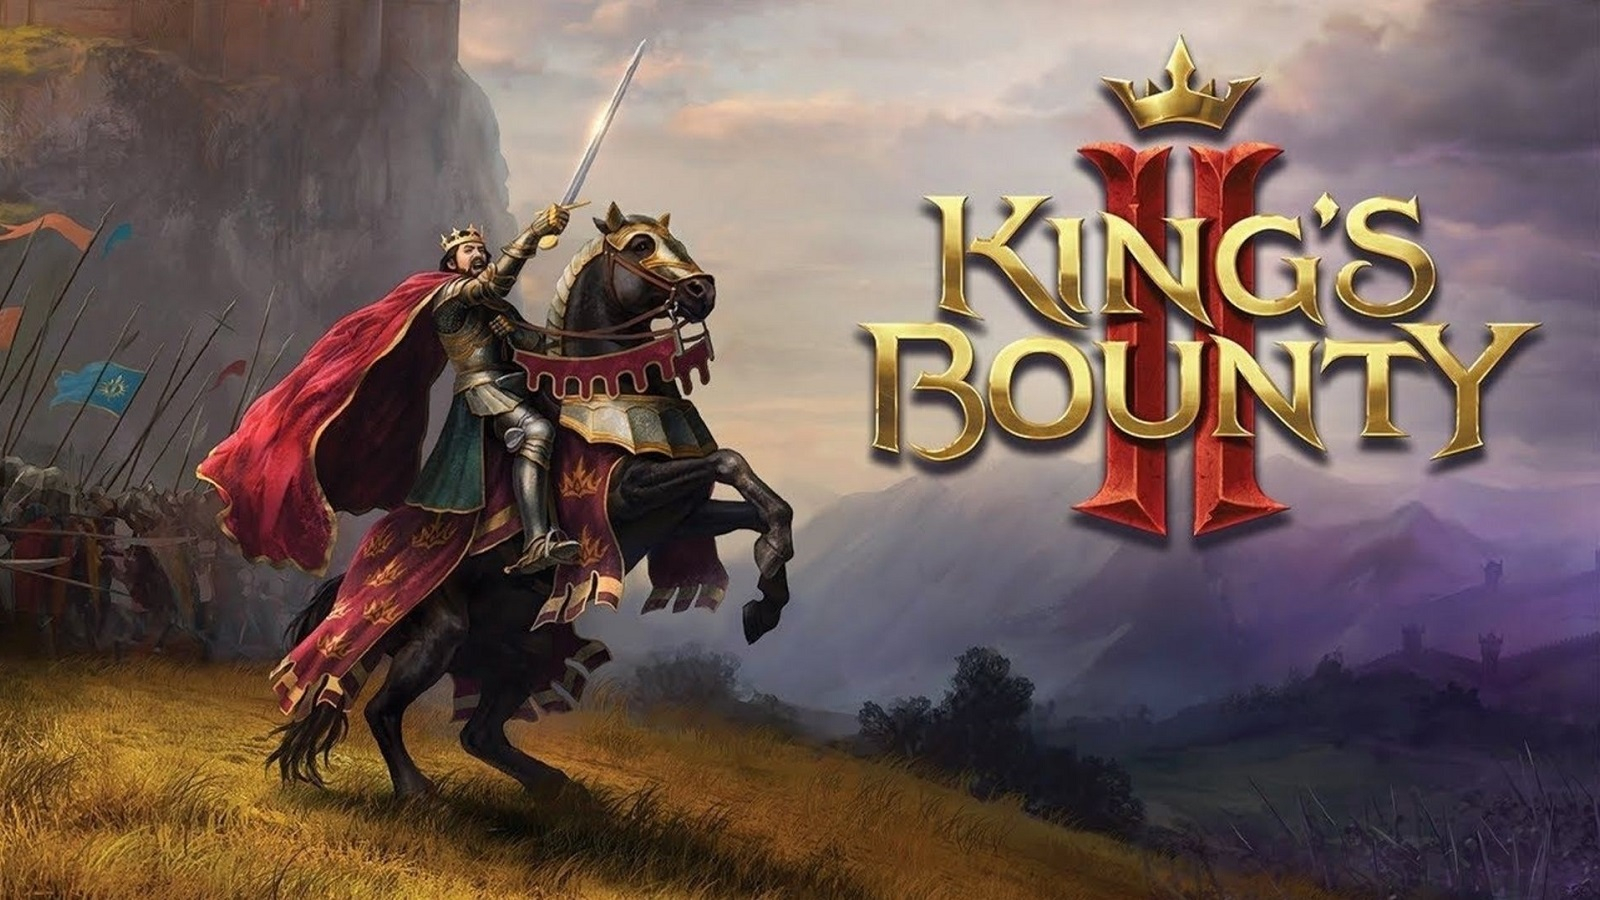 Релиз King’s Bounty II отложили до марта 2021 года, но об этом объявили раньше времени